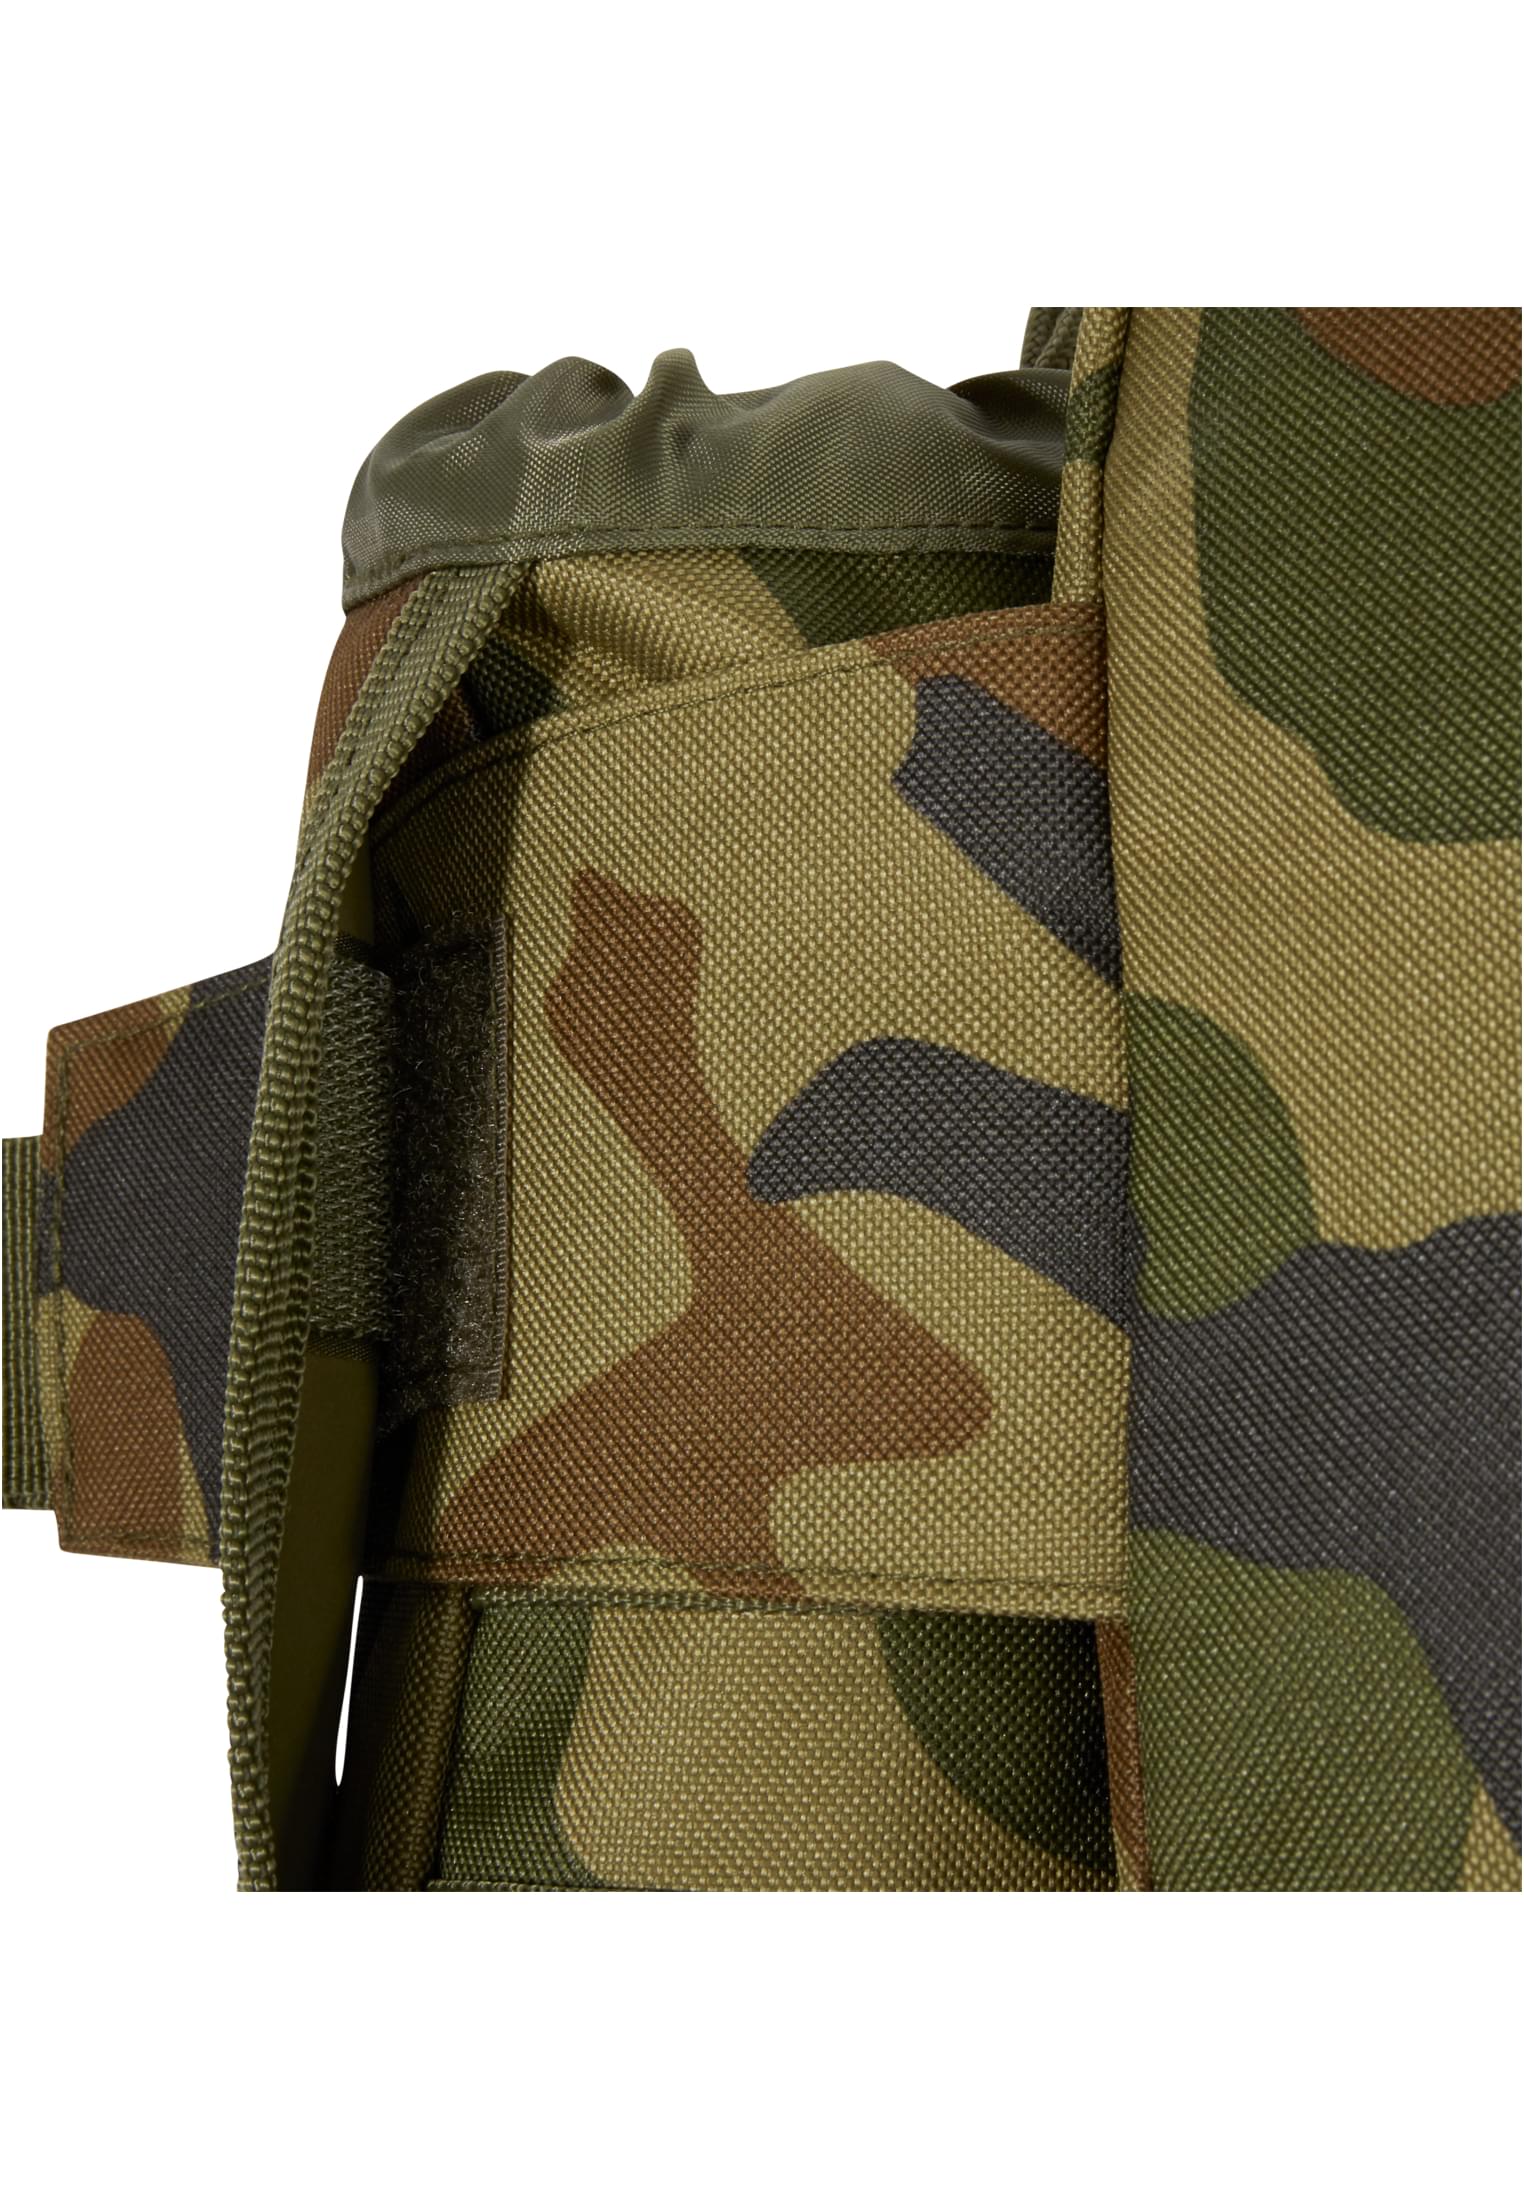 Taschen waistbeltbag Allround in Farbe woodland